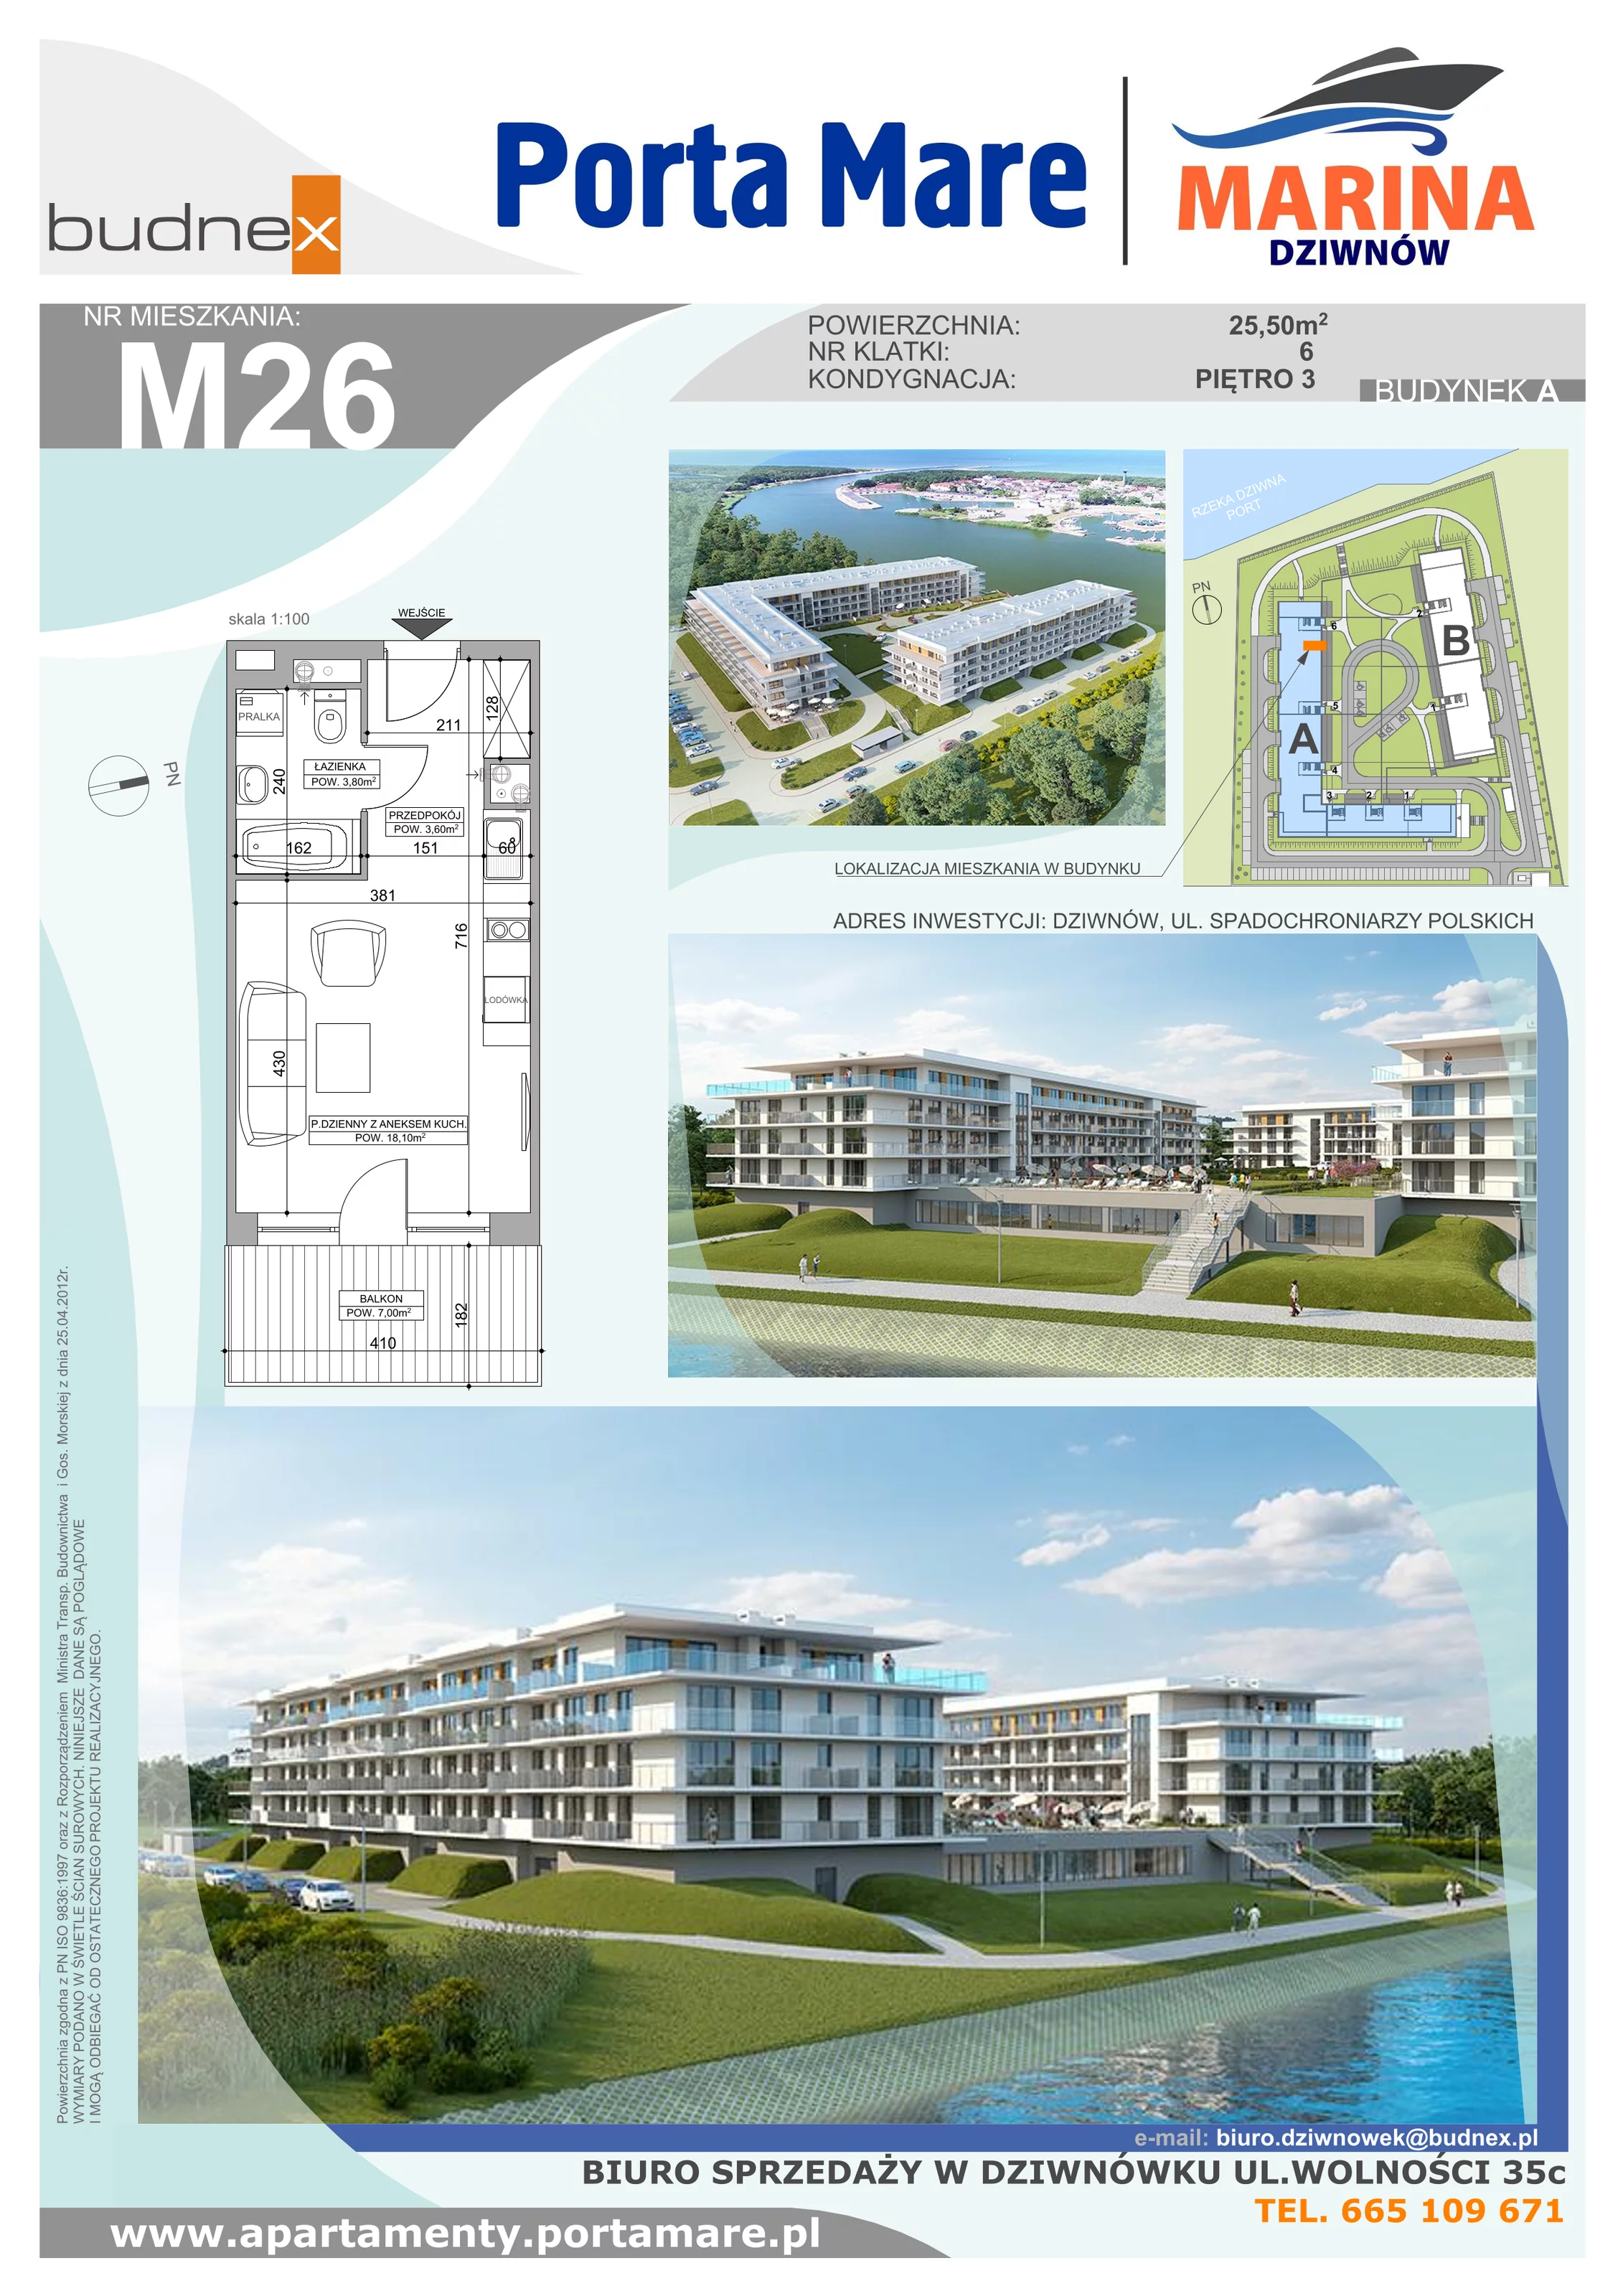 Apartament 25,50 m², piętro 3, oferta nr A.6.M26, Porta Mare MARINA Dziwnów, Dziwnów, ul. Spadochroniarzy Polskich 10